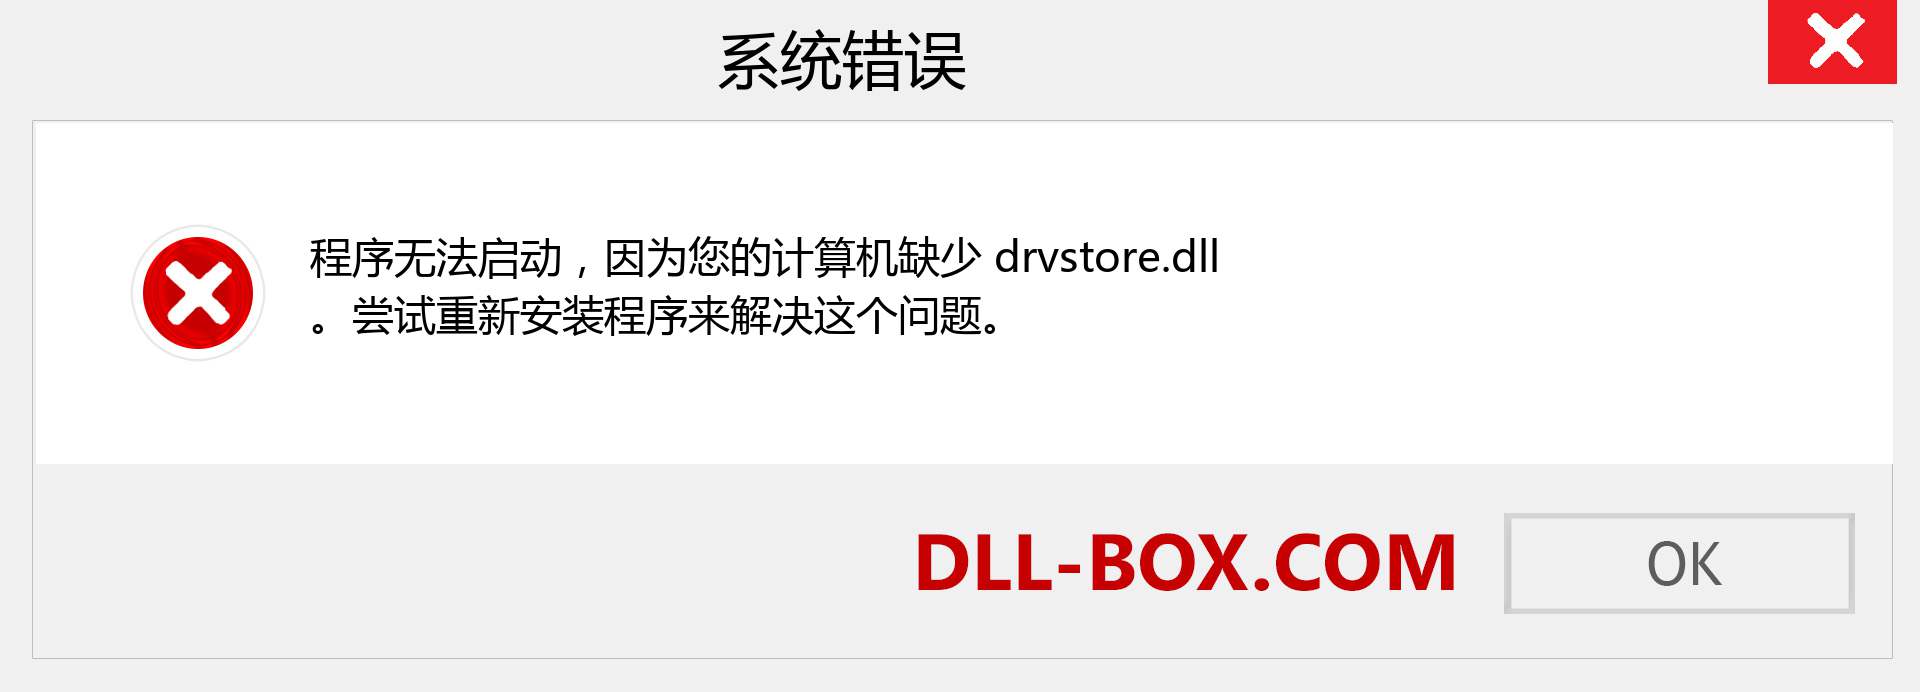 drvstore.dll 文件丢失？。 适用于 Windows 7、8、10 的下载 - 修复 Windows、照片、图像上的 drvstore dll 丢失错误